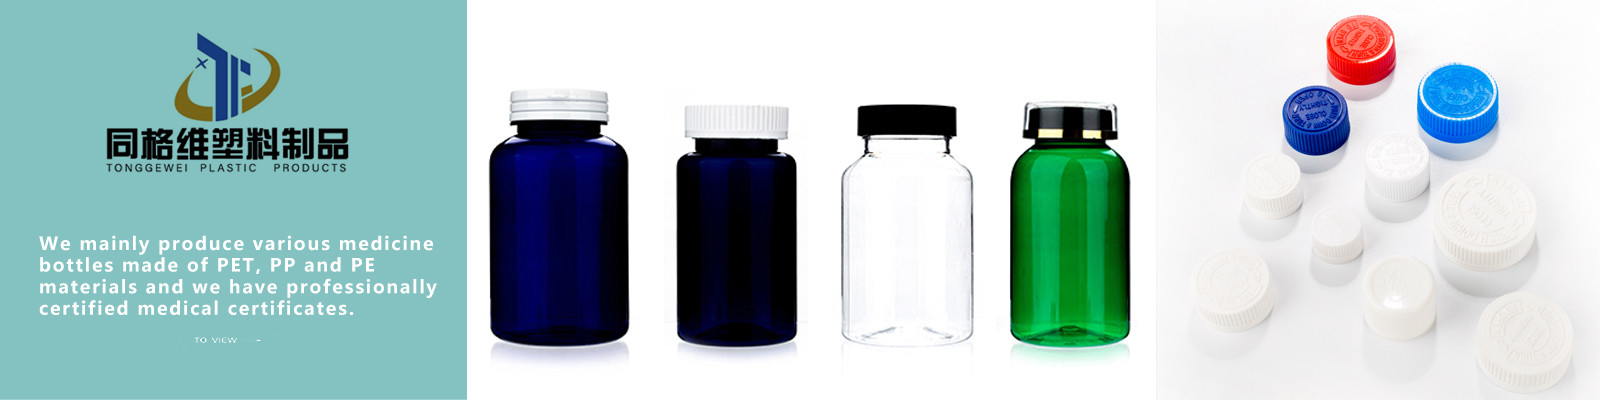 China best Plastic Medicine Bottles on sales